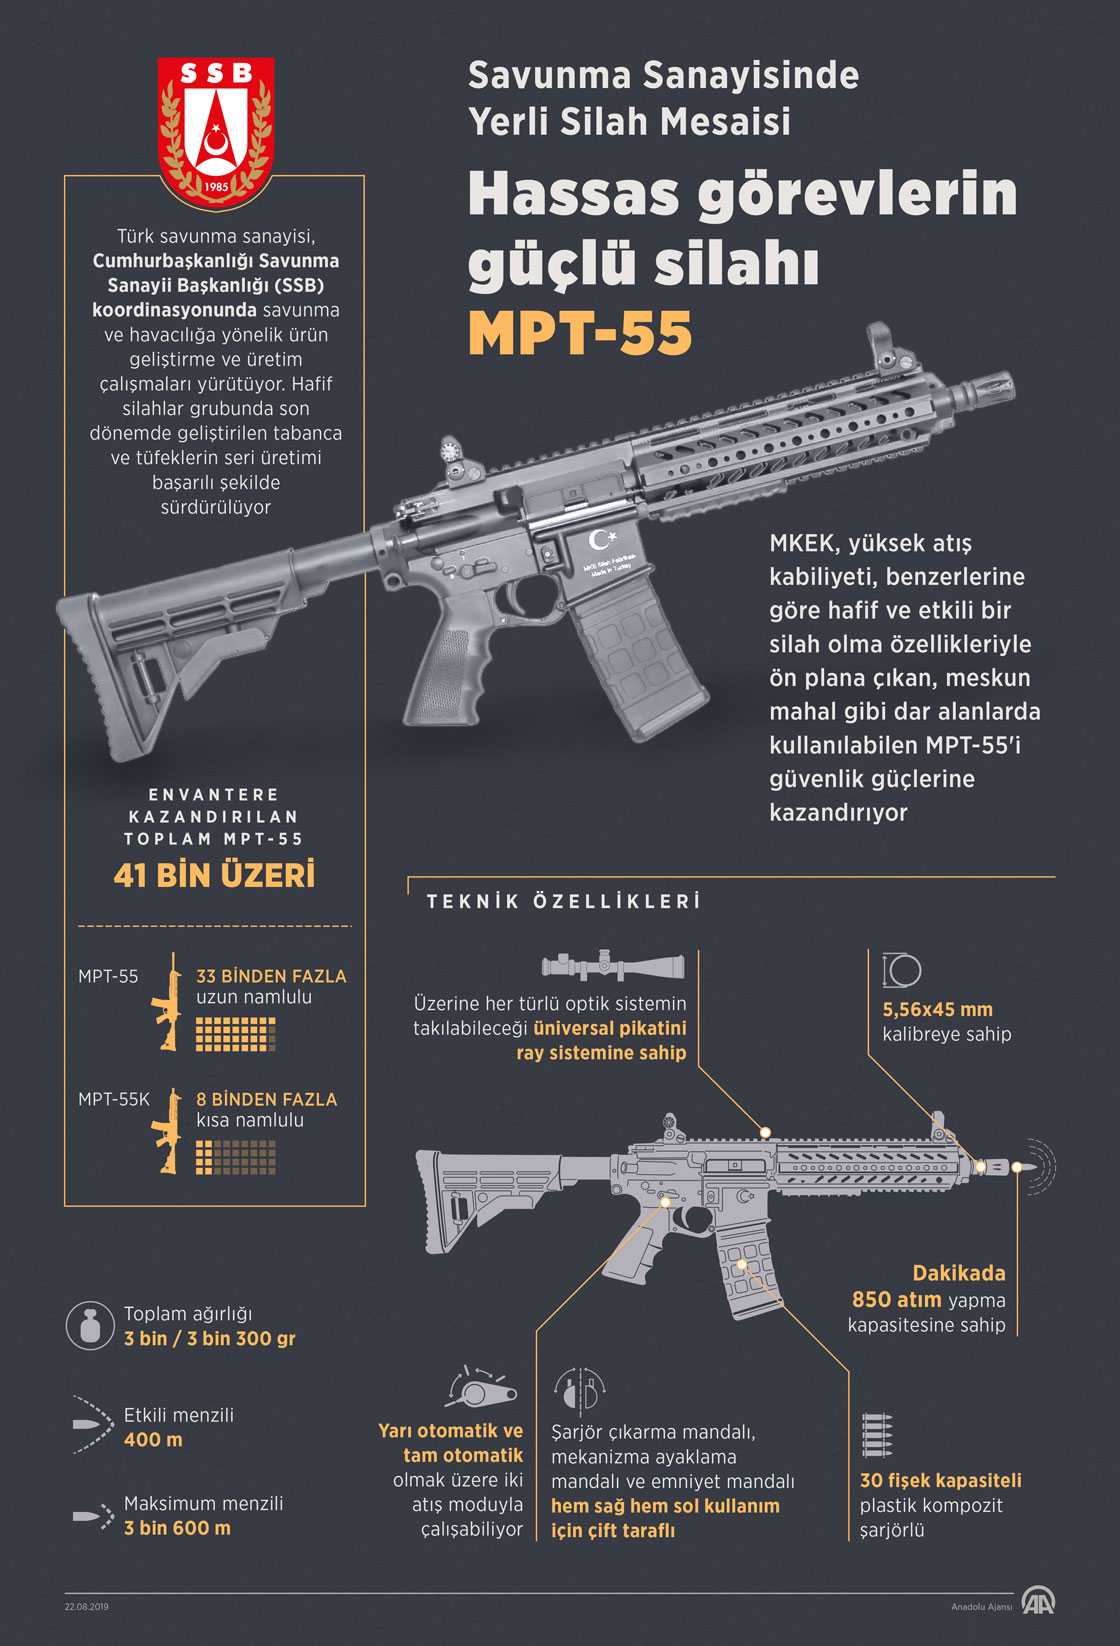 Yüksek atış kabiliyeti, hafif ve etkili Milli Piyade Tüfeği MPT-55